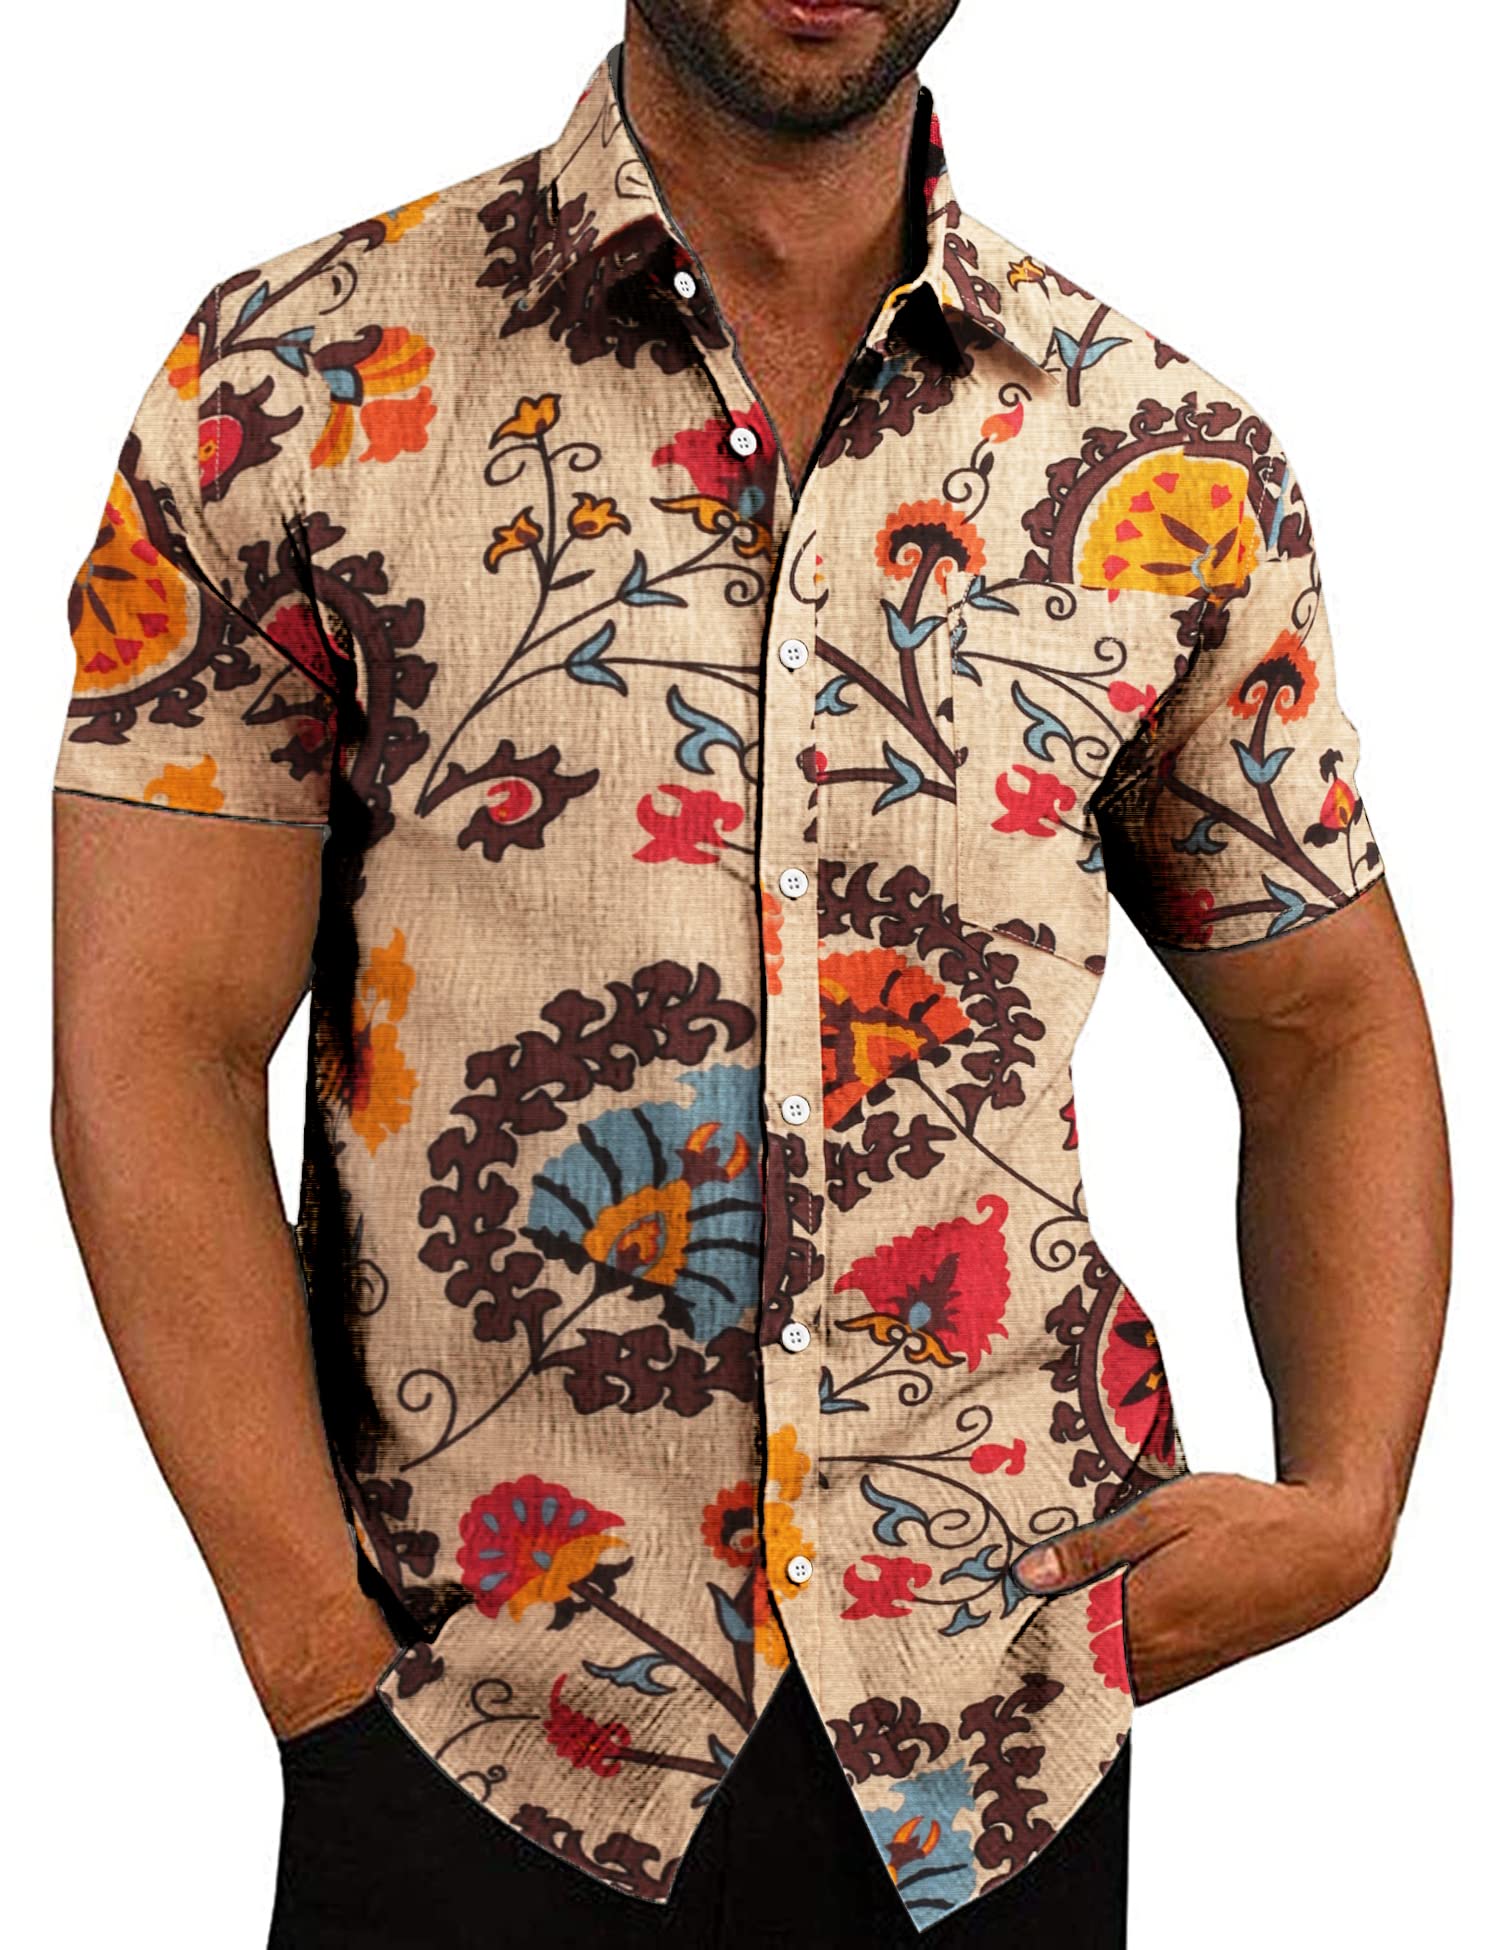 COOFANDY Men's Casual Linen Button Down Shirt Short Sleeve Beach Shirt